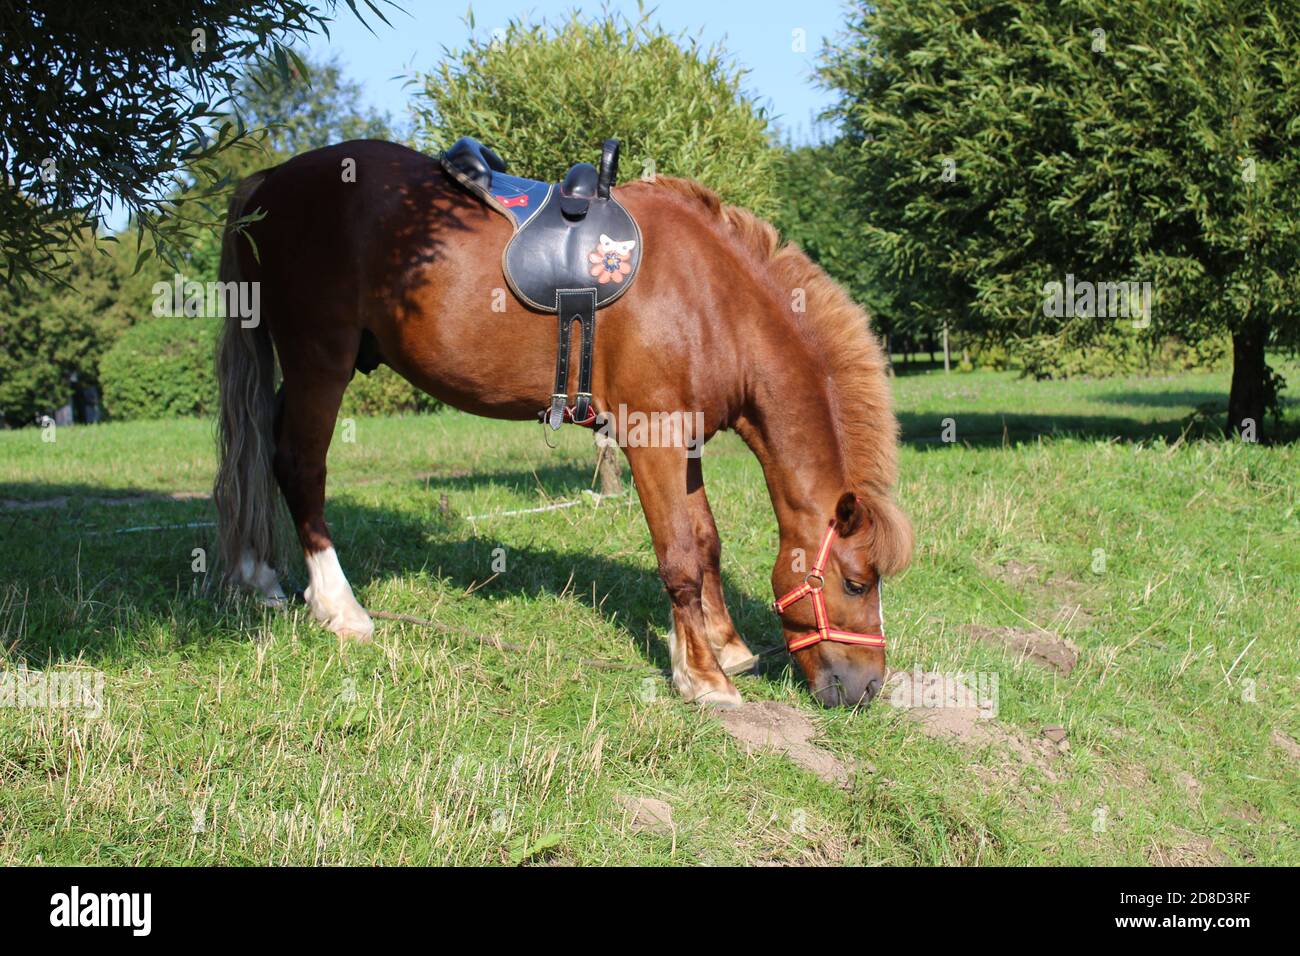 Rot braun Pferd im Geschirr Pferd essen grünes Gras auf Ein sonniger Tag  vor dem Hintergrund von grünen Büschen Stockfotografie - Alamy